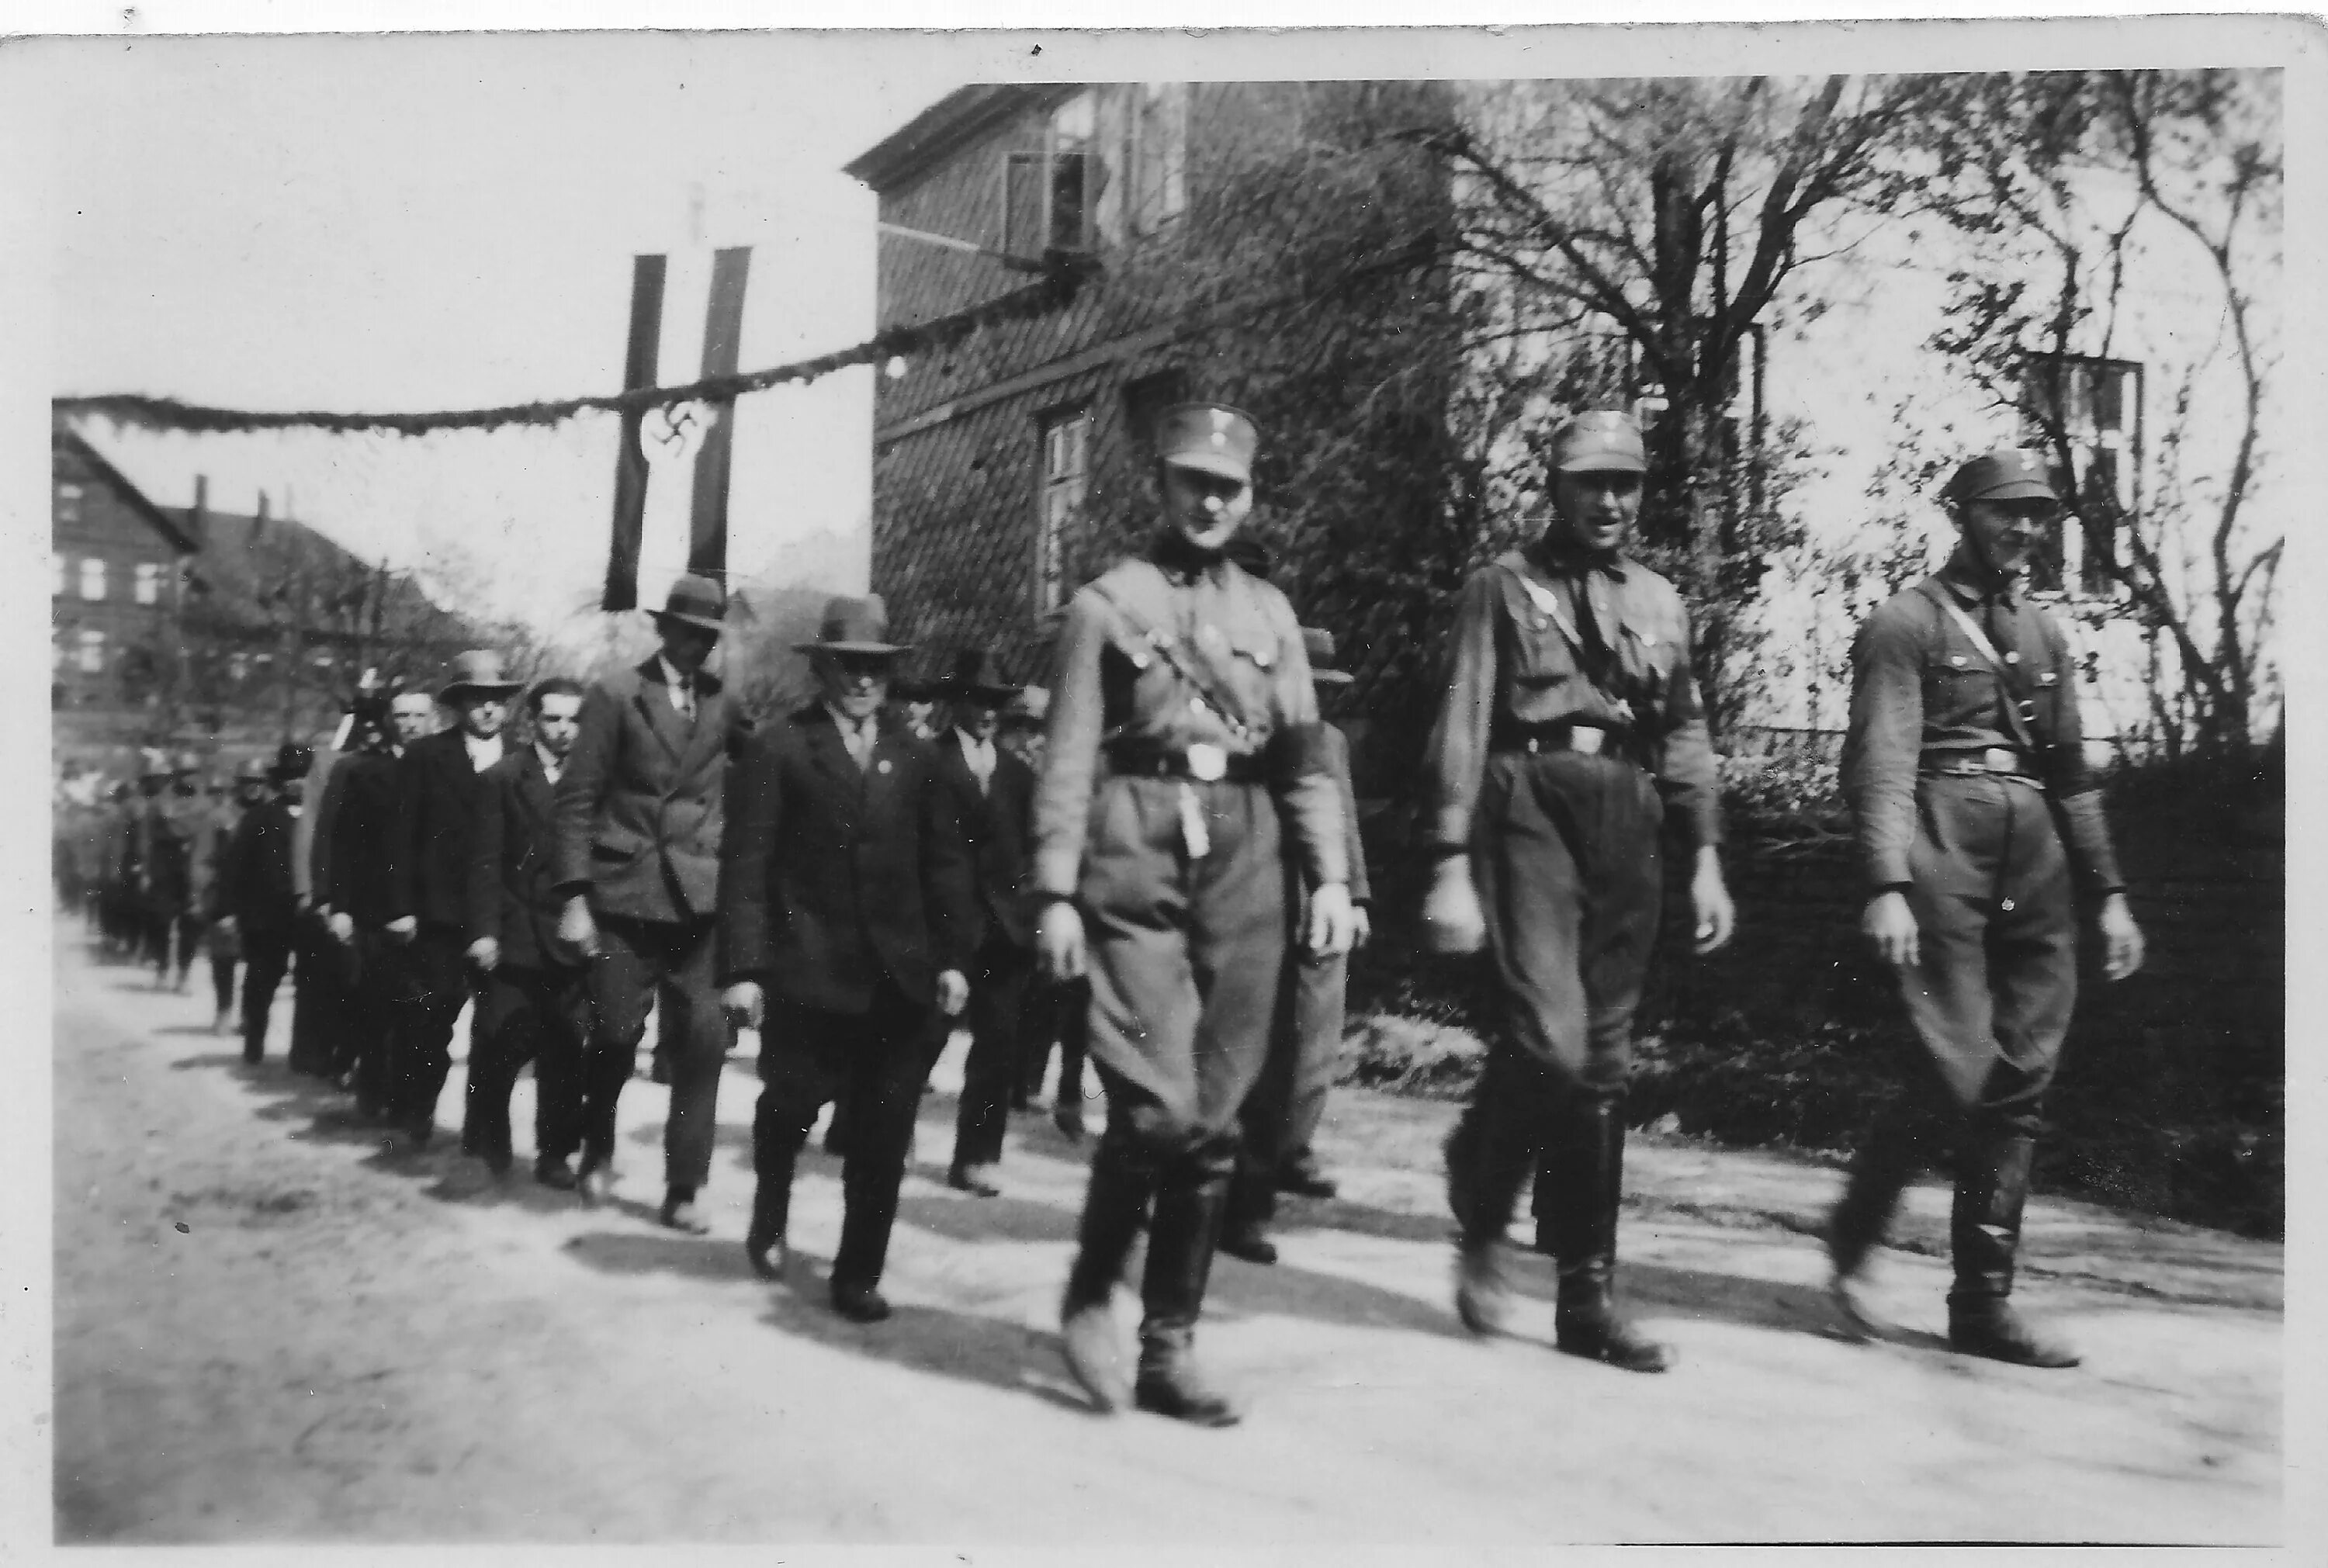 Штурмовые отряды са Гитлера 1921-1945. Са штурмовые отряды НСДАП. Штурмовые отряды (Sturmabteilung. Са штурмовые отряды НСДАП форма. Фашистские отряды